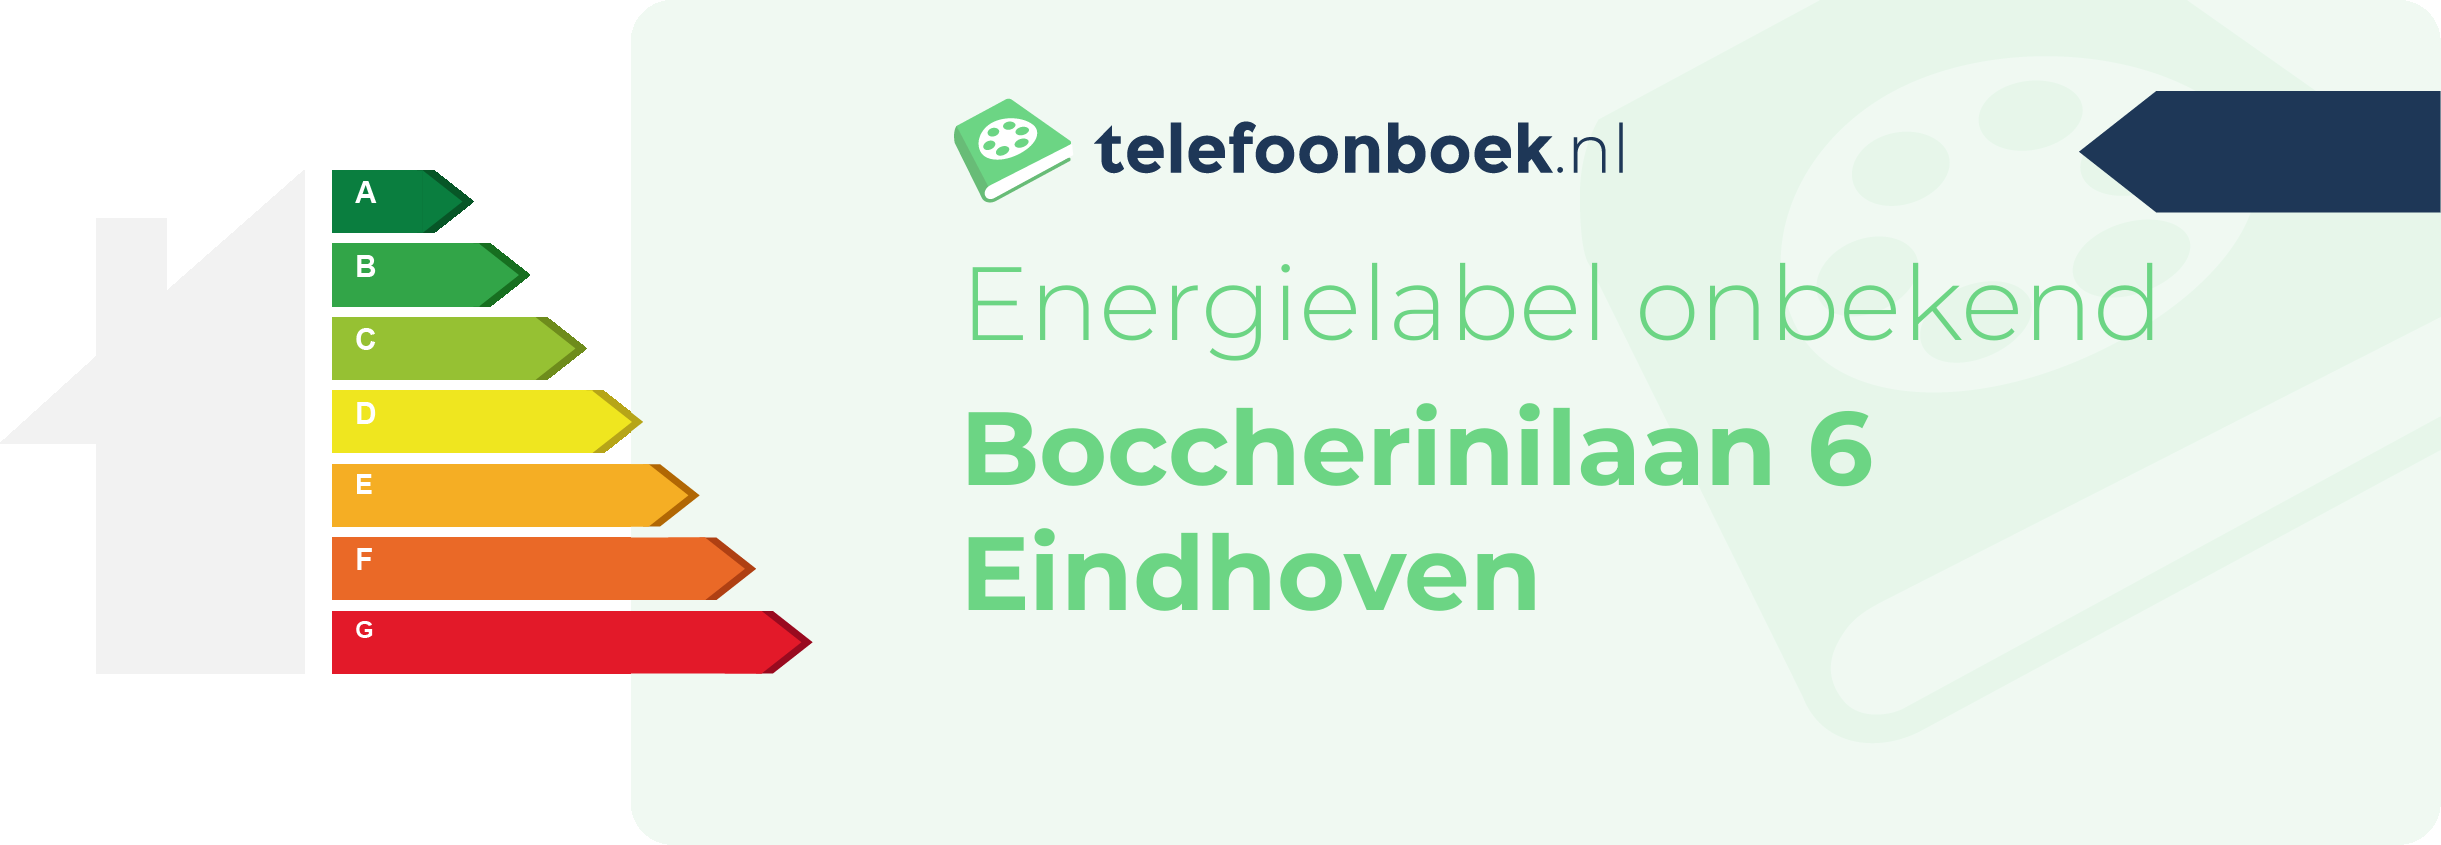 Energielabel Boccherinilaan 6 Eindhoven